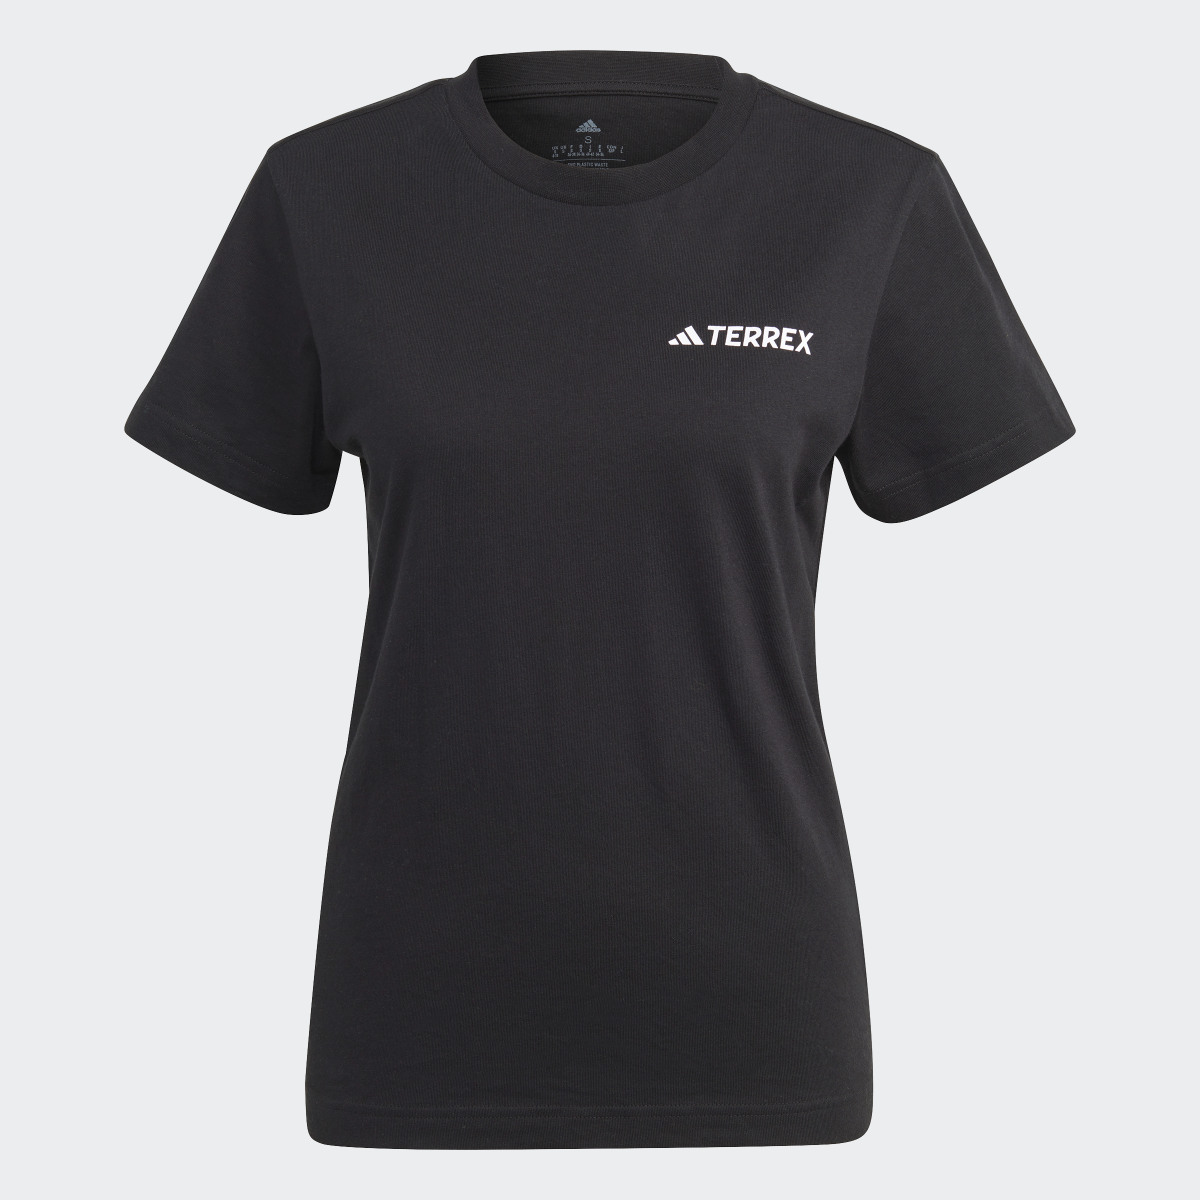 Adidas Camiseta Terrex Graphic Altitude. 5